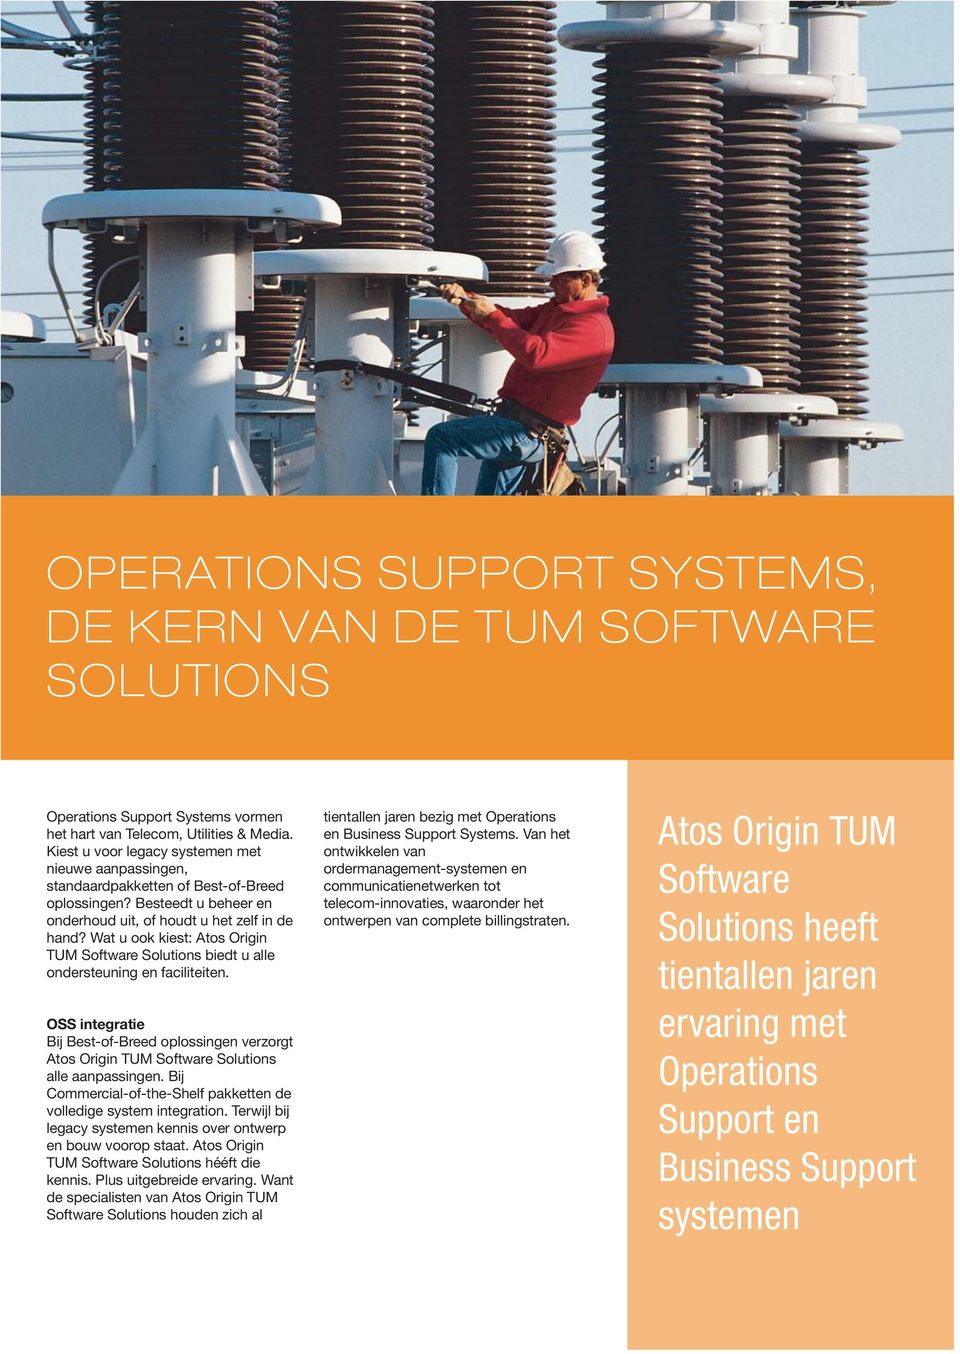 Wat u ook kiest: Atos Origin TUM Software Solutions biedt u alle ondersteuning en faciliteiten. OSS integratie Bij Best-of-Breed oplossingen verzorgt alle aanpassingen.